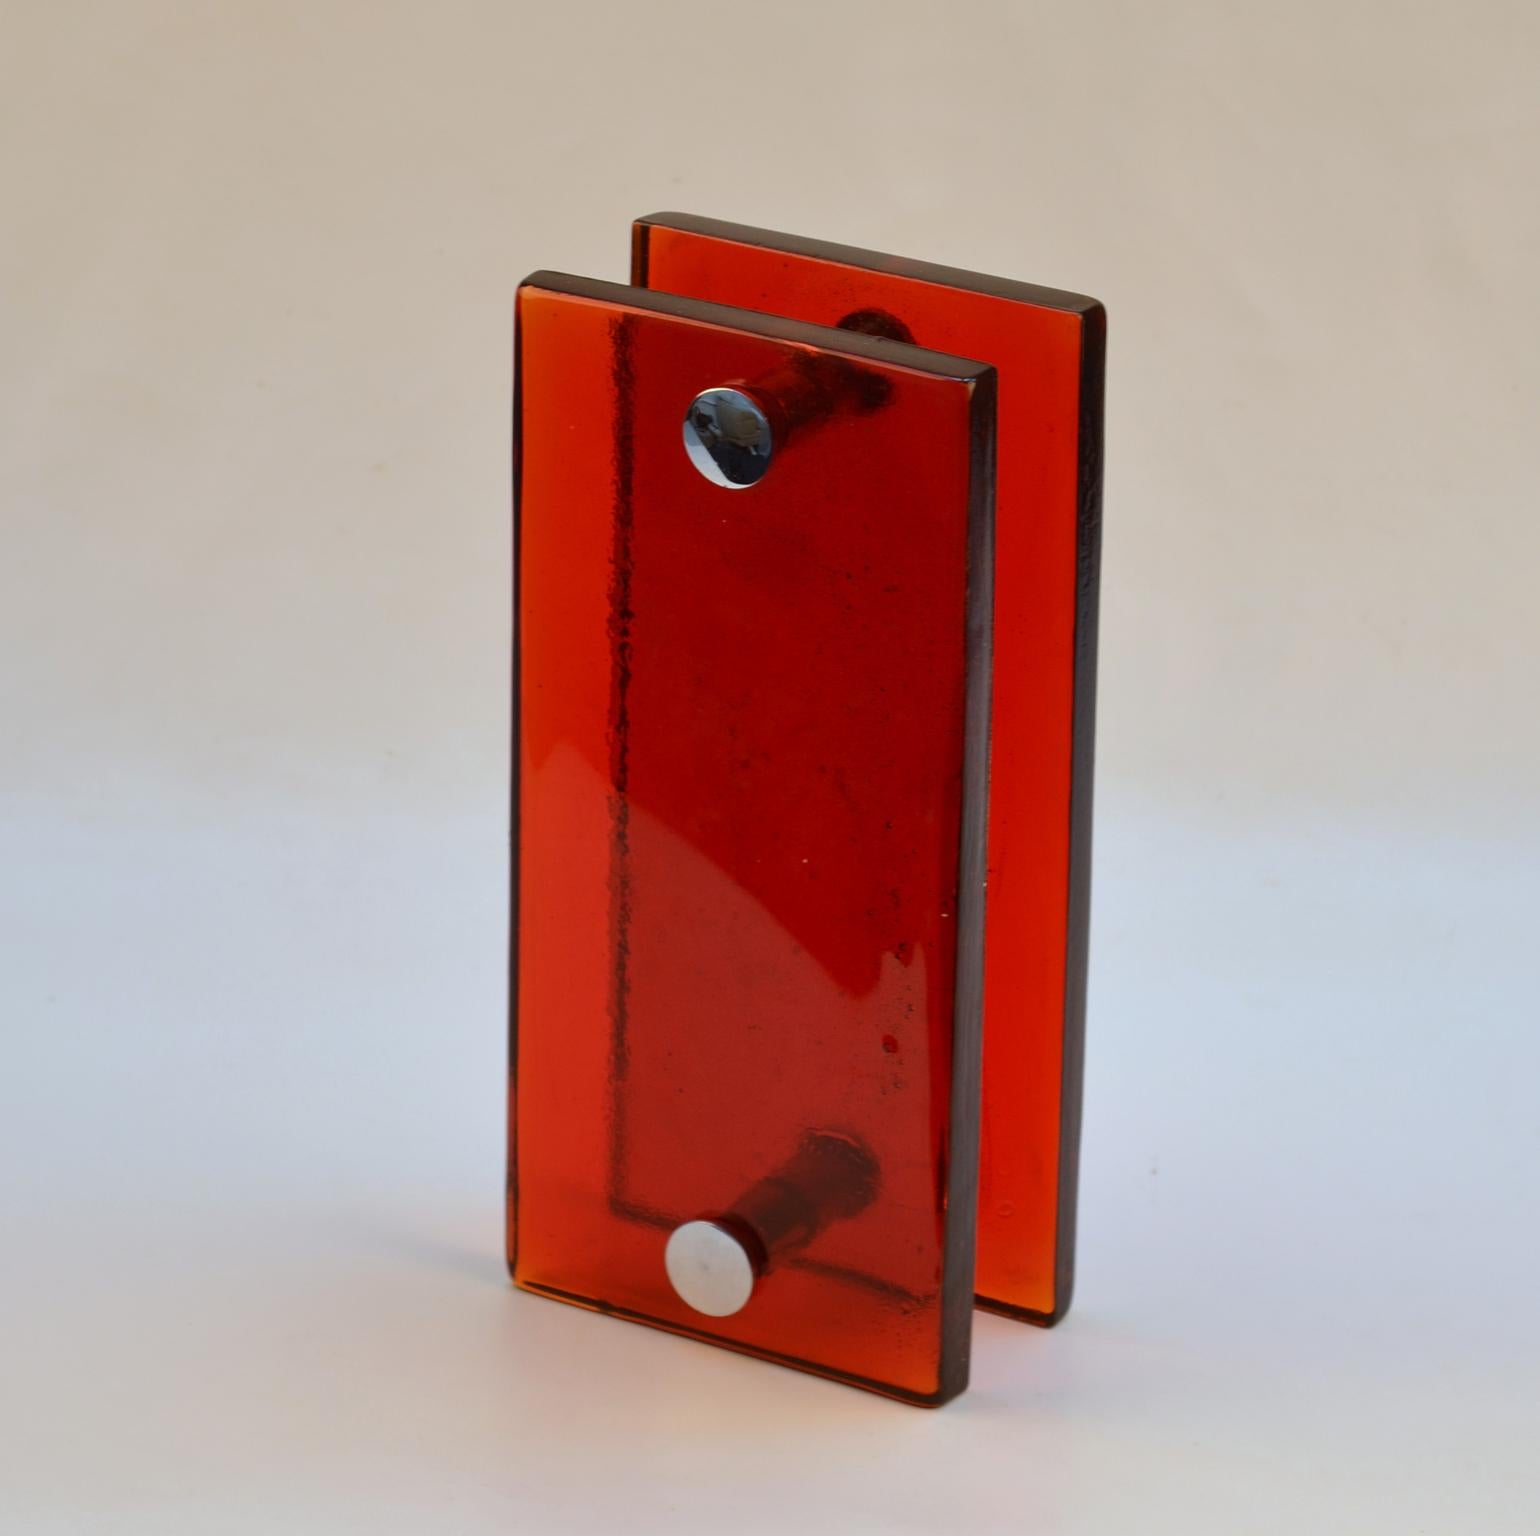 Ein Paar Doppeltürgriffe zum Drücken und Ziehen, rechteckig, aus rotem Gussglas mit verchromten Beschlägen, entworfen für Glas- oder Holztüren, aber für jede Art von Türen geeignet. Die Glasplatten werden gegossen, indem geschmolzenes Glas in eine